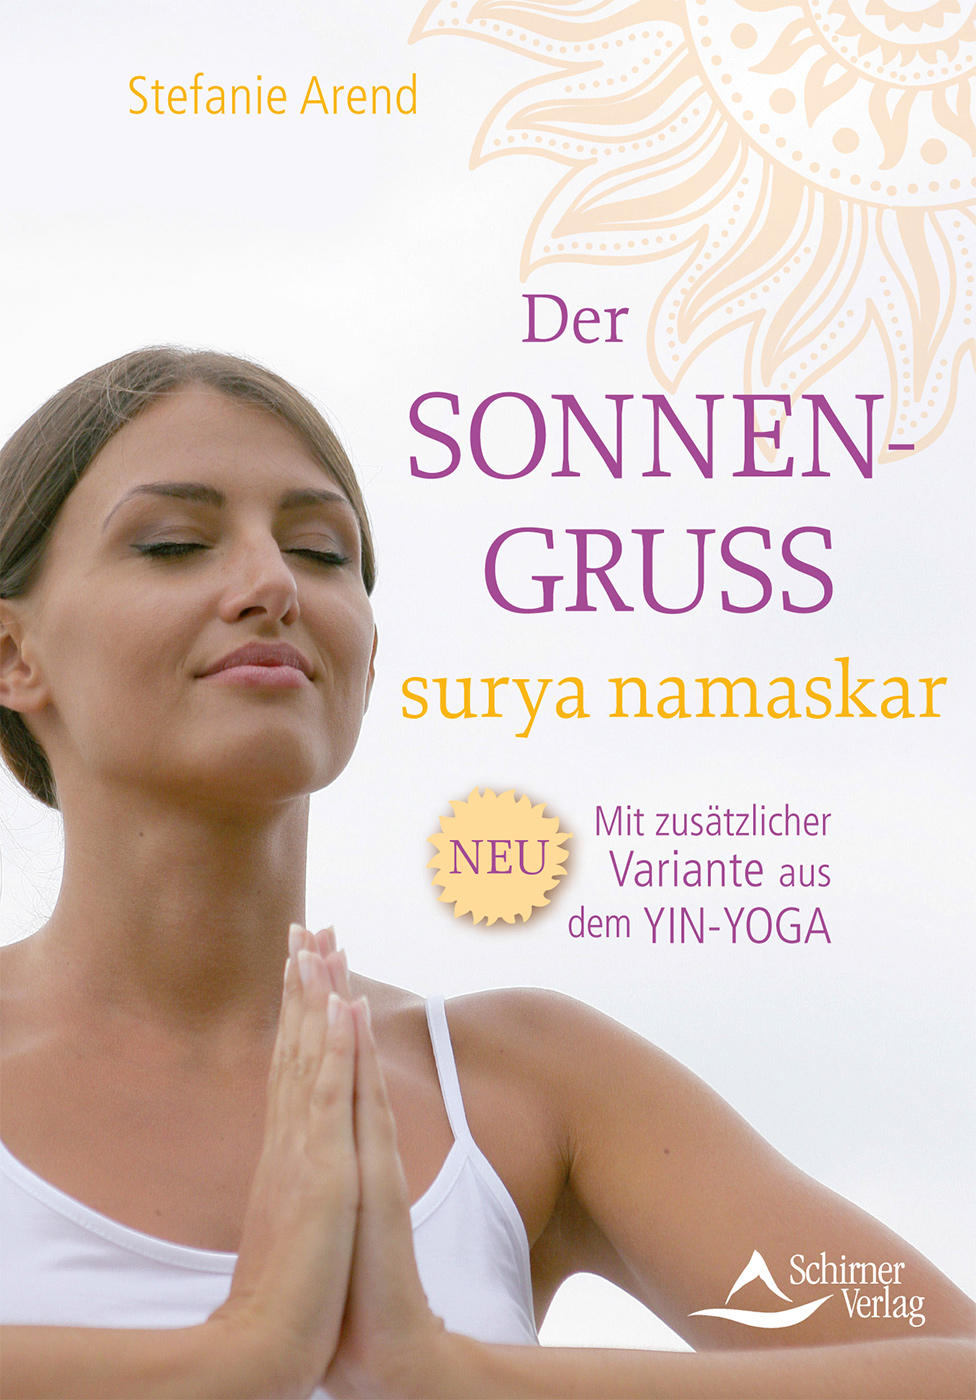 Yogistar Com Der Sonnengruss Surya Namaskar Von Stefanie Arend Yoga Zubehor Yogamatten Und Yoga